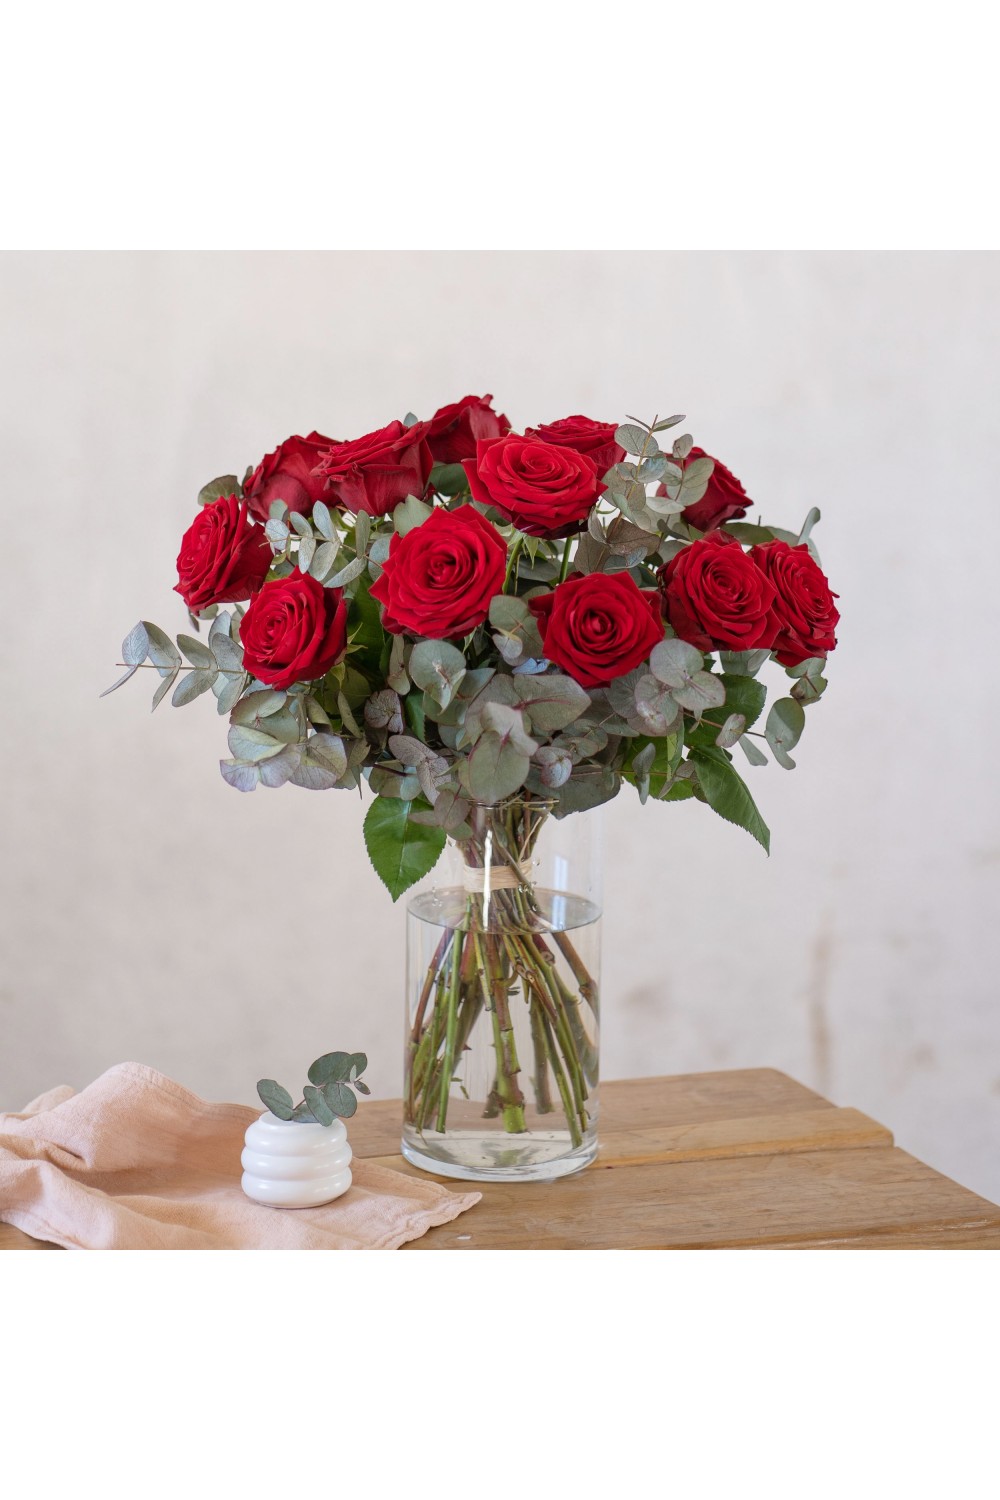 Enviar rosas - 12 Rosas Rojas de Tallo Largo - Interflora